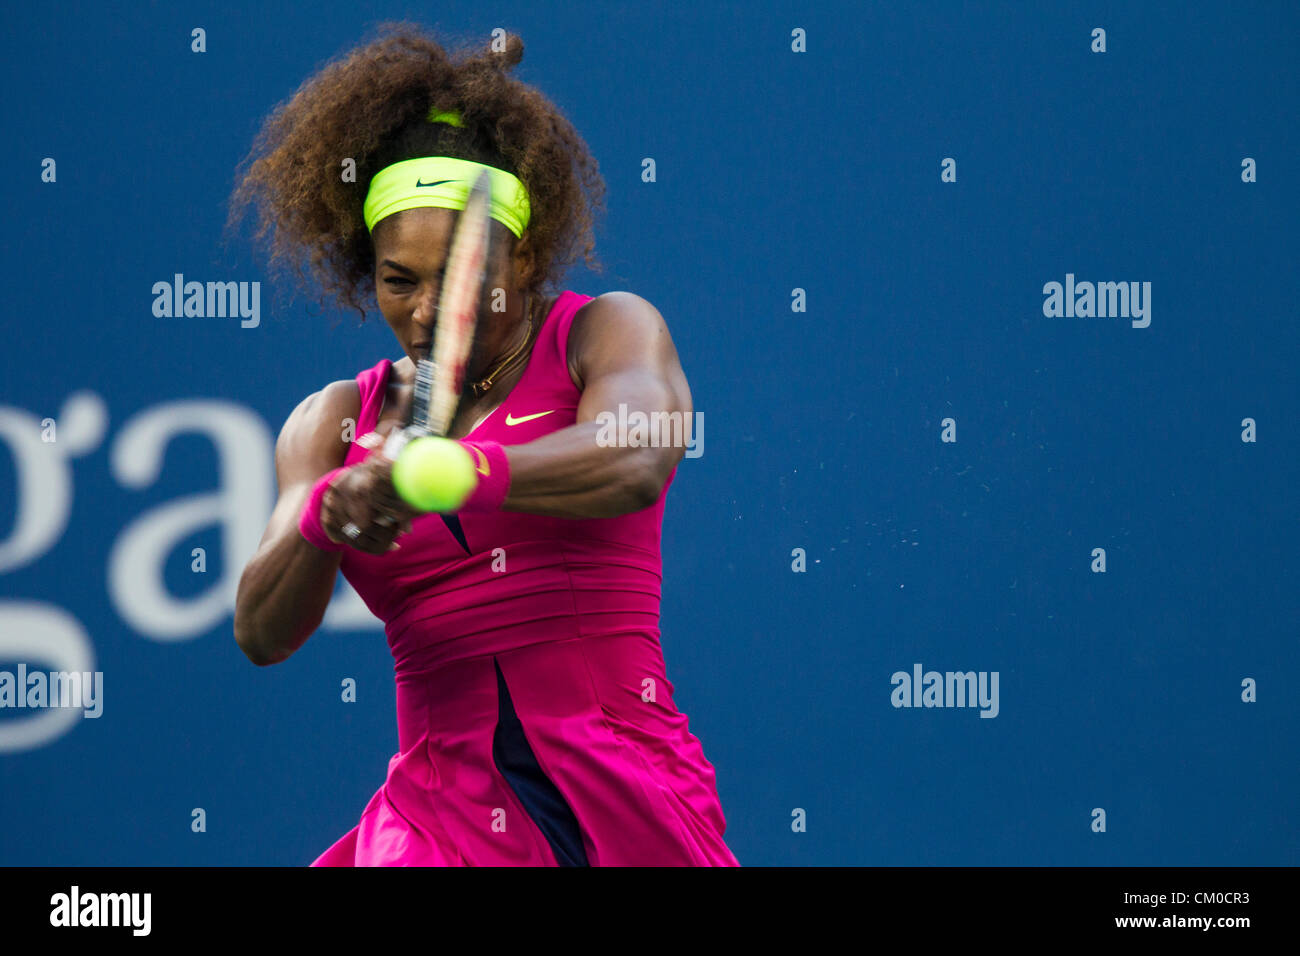 New York, USA. 7 septembre 2012. Serena Williams (USA) qui se font concurrence sur le demi-finales à l'US Open 2012, le tournoi de tennis de Flushing, New York. USA.9 Septembre Banque D'Images